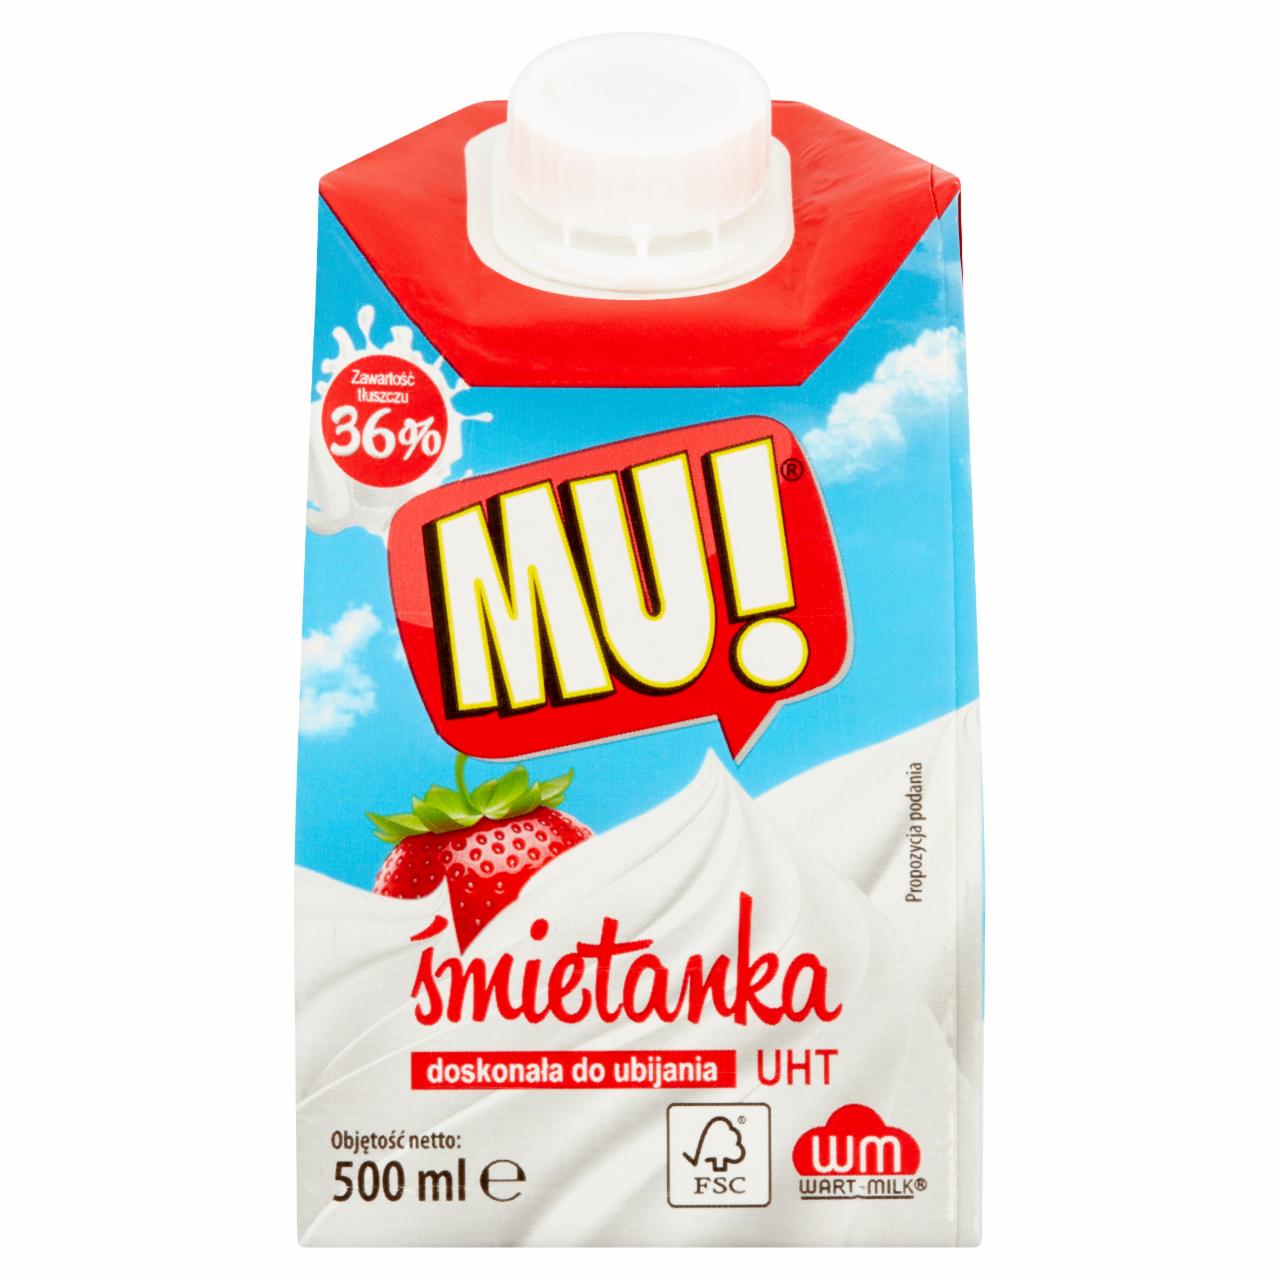 Photo - Mu! UHT Cream 36% 500 ml